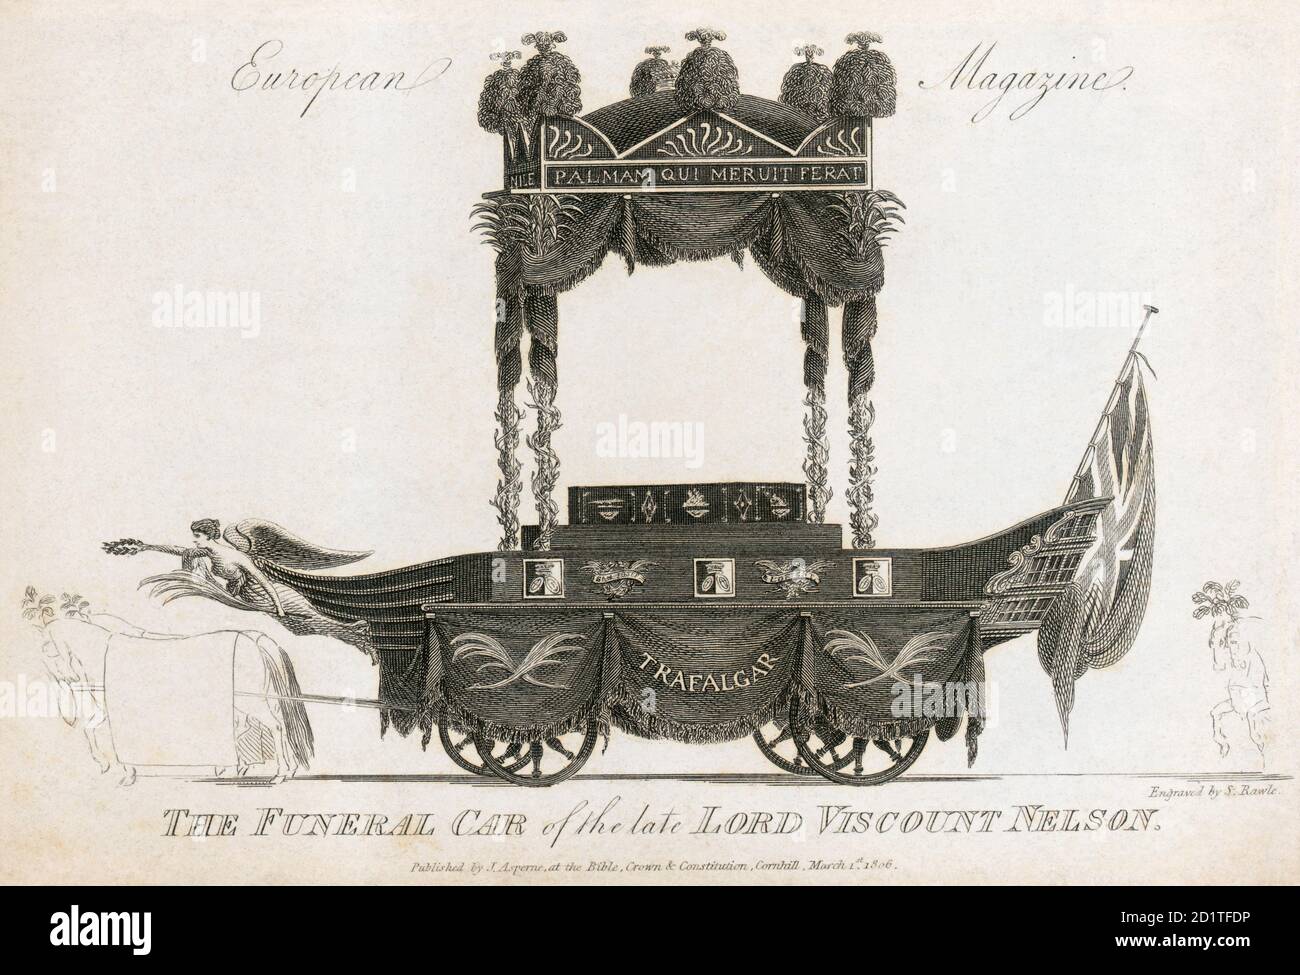 ST PAUL'S CATHEDRAL, St Paul's Kirchhof, City of London. Bestattungswagen für Admiral Nelson. Gravur datiert 1806. Aus der Mayson Beeton Collection. Stockfoto